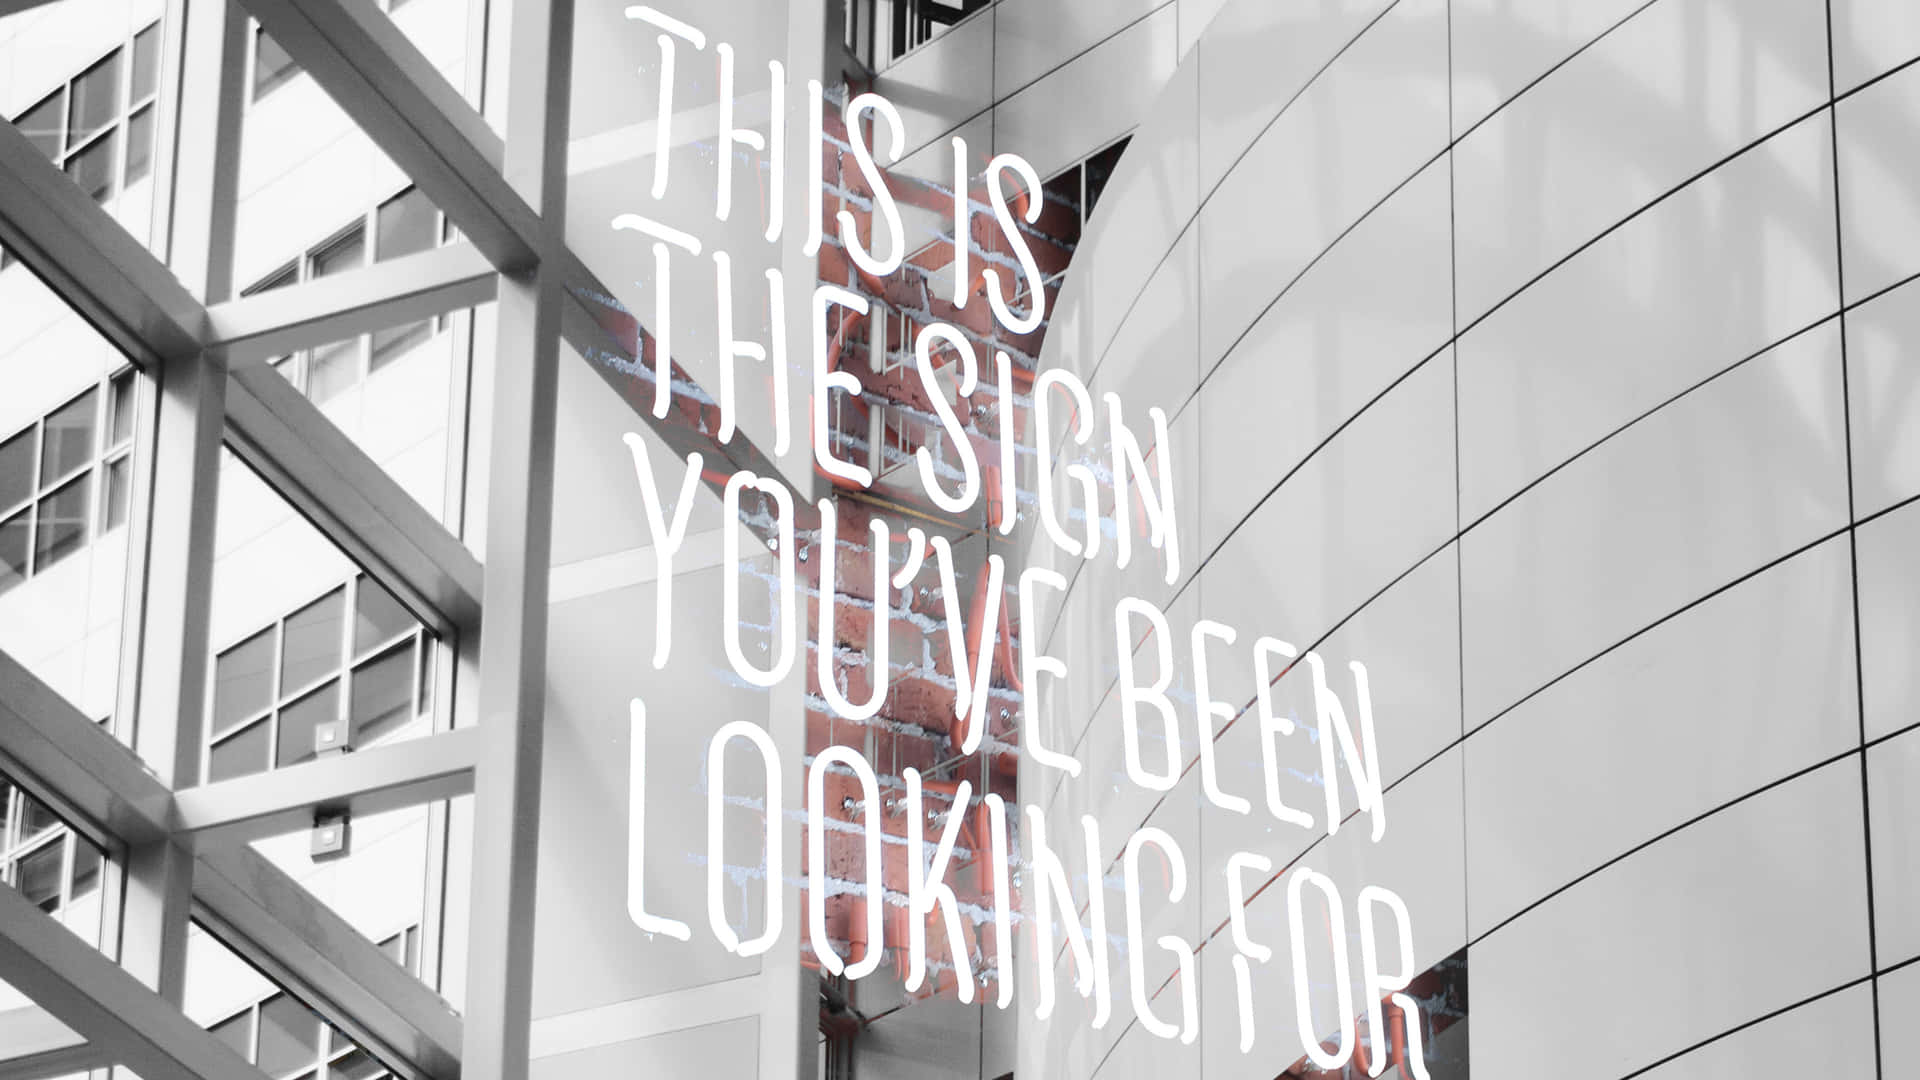 Modern Design Message Building Facade4 K Business.jpg Wallpaper